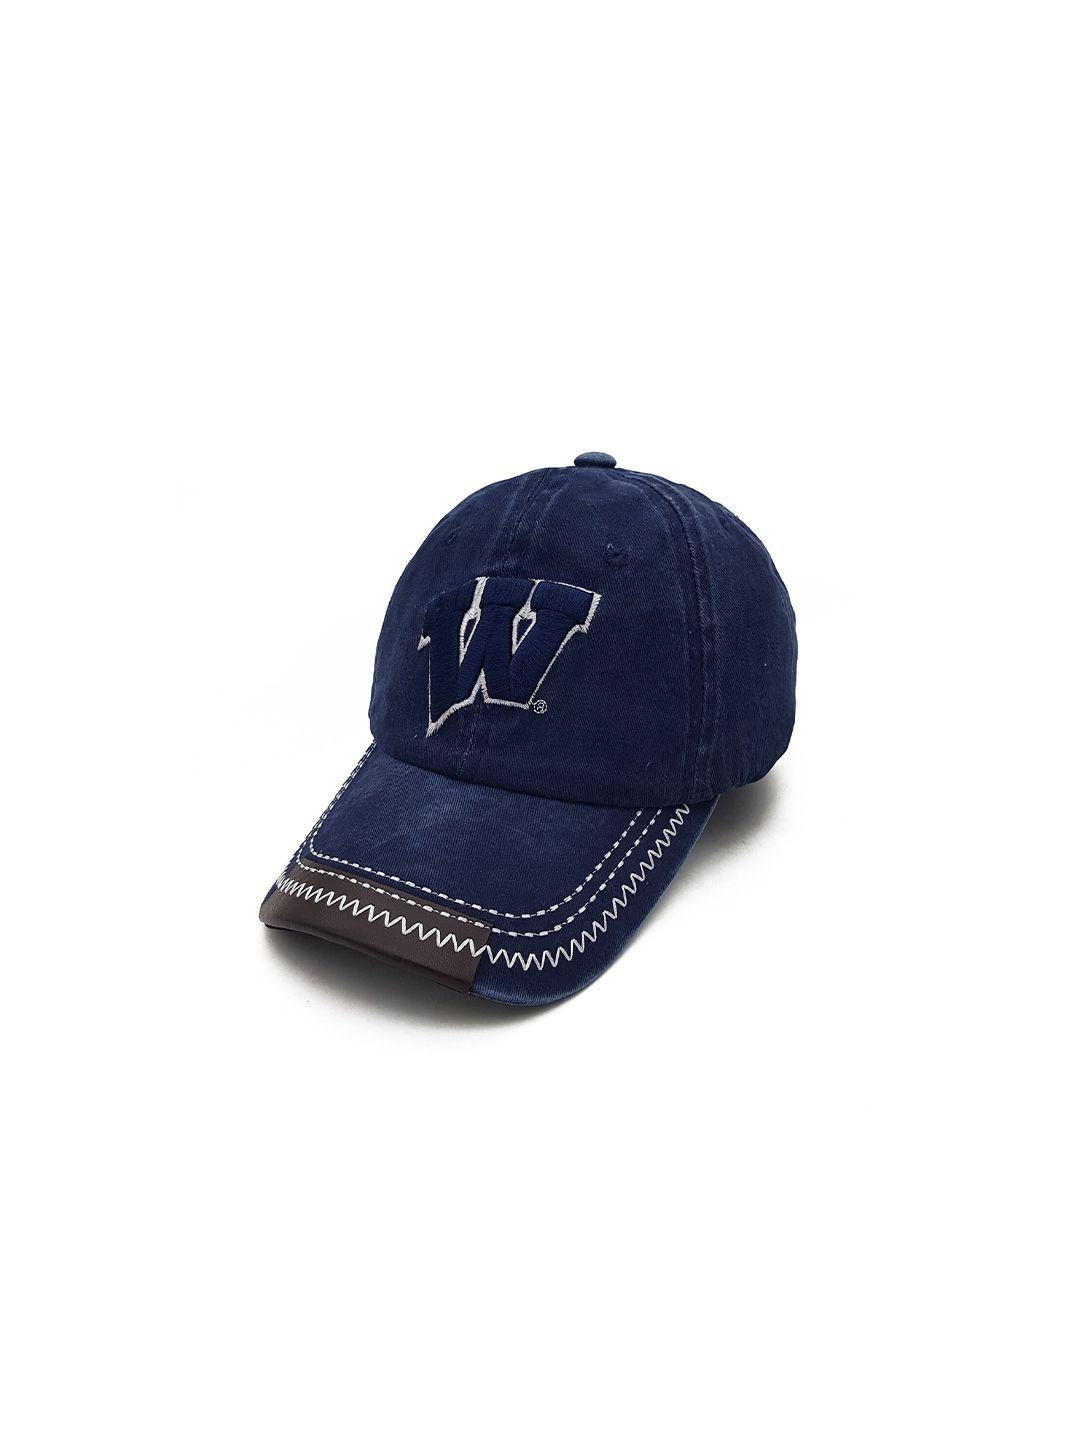 jenna men blue & white embroidered baseball cap